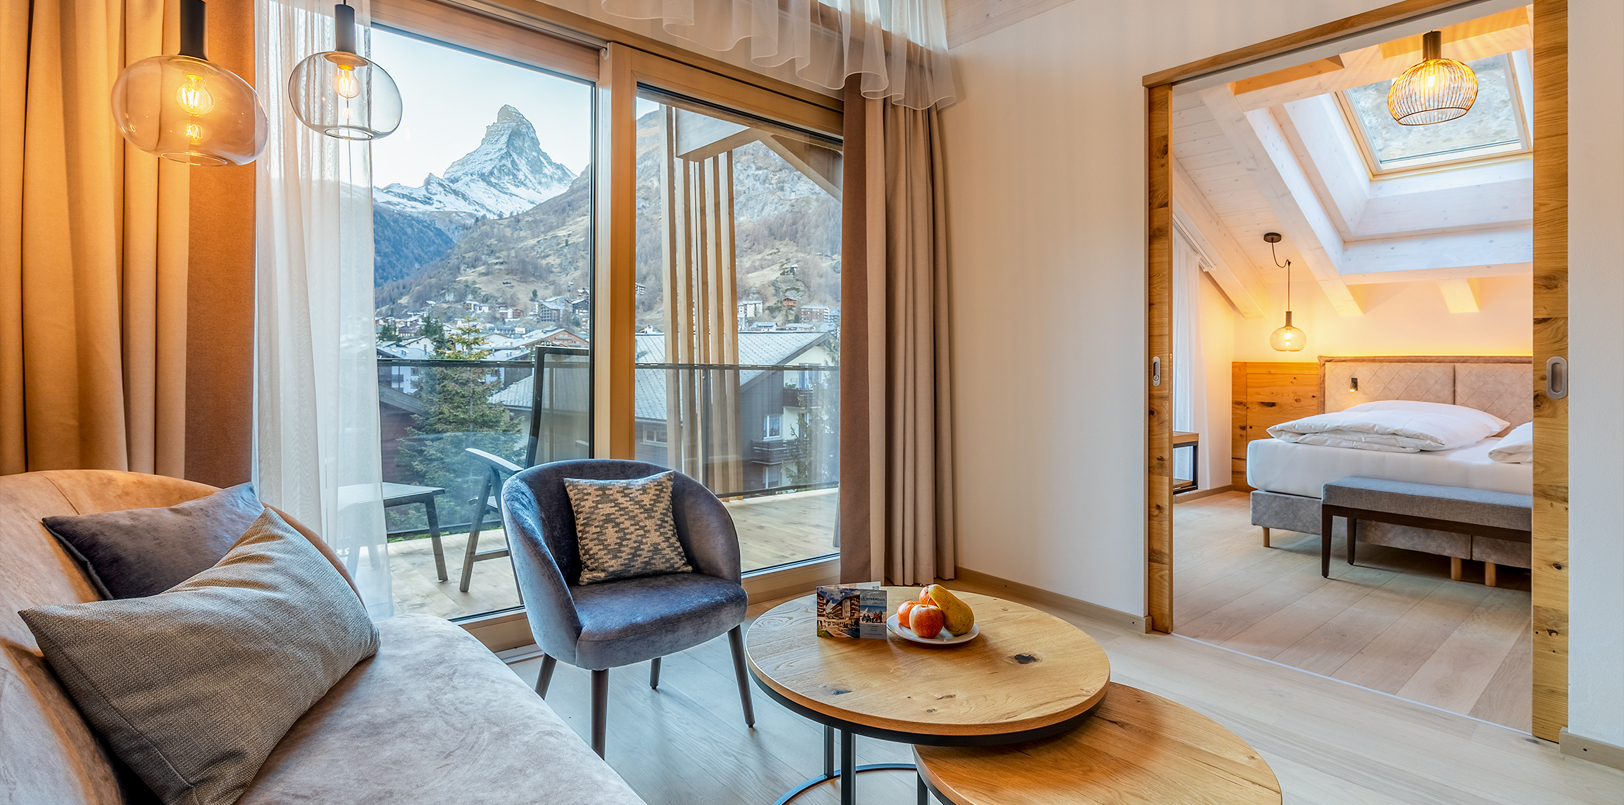 Zimmer in der Residenz Altiana in Zermatt mit Blick aufs Matterhorn